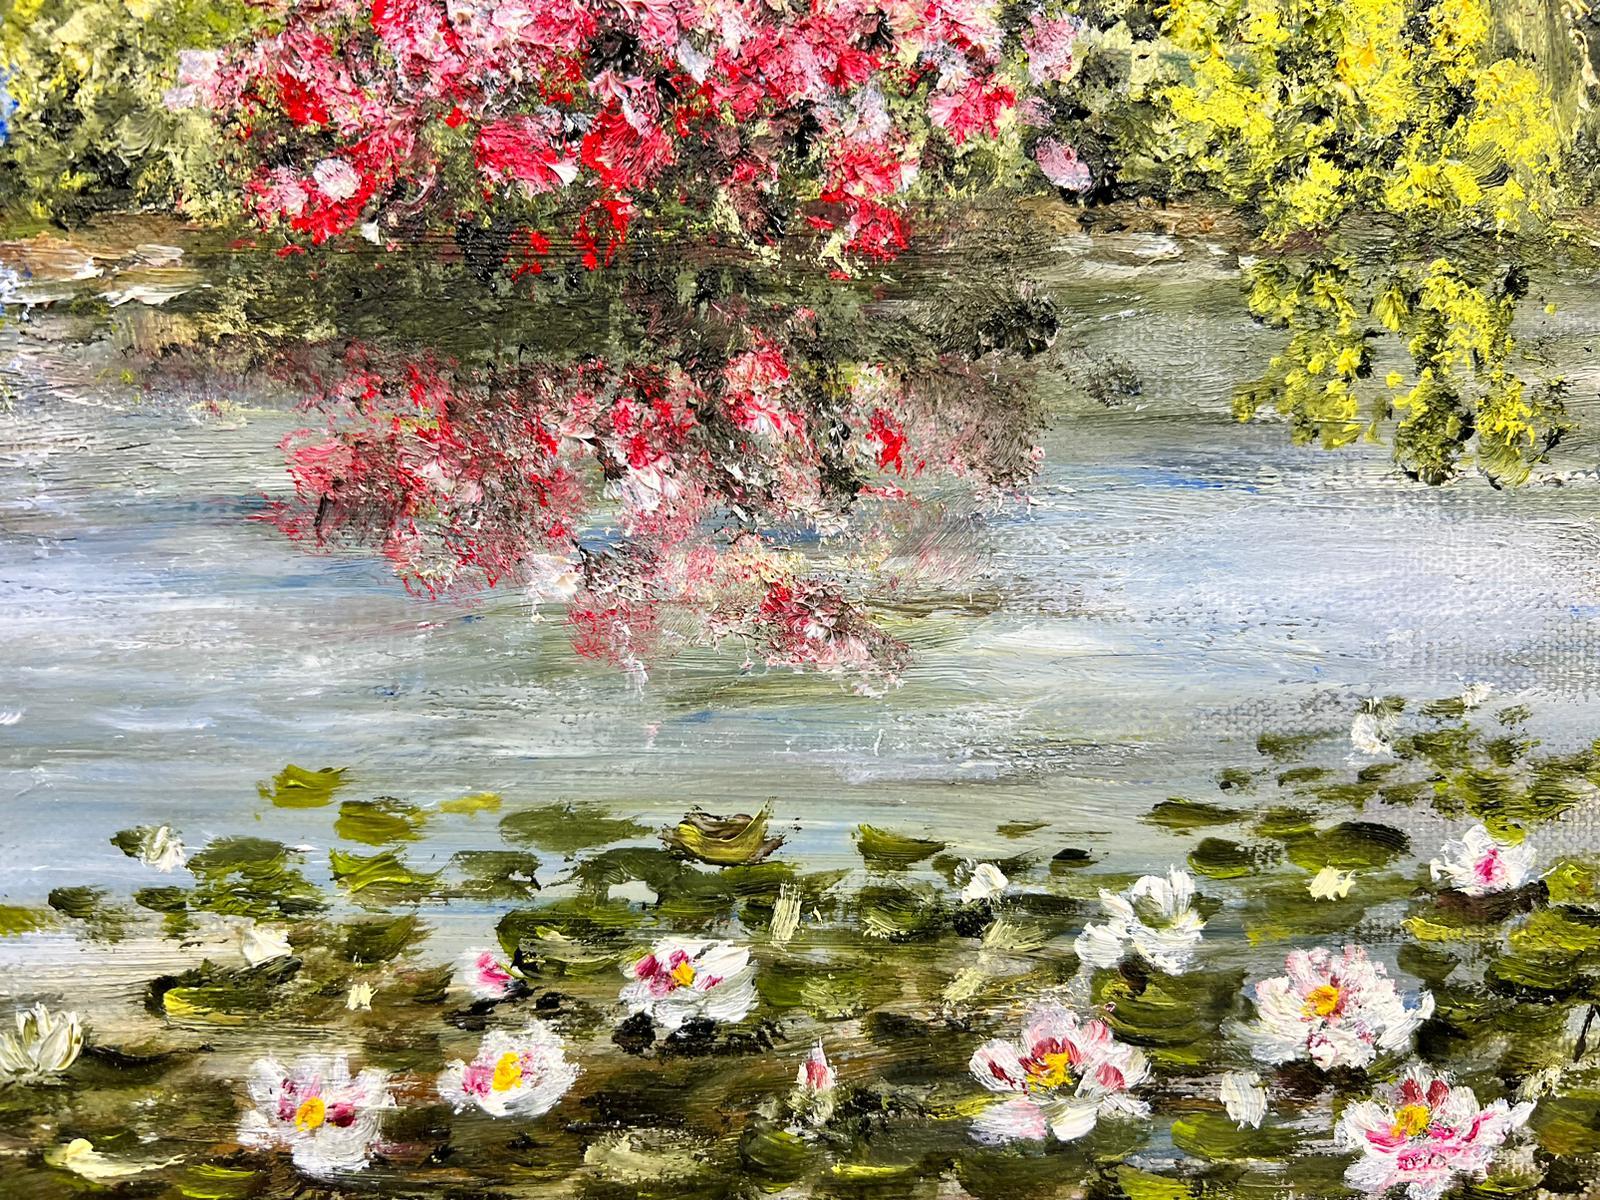 Peinture à l'huile impressionniste française signée Waterlily Pond, Giverny Monet's Gardens 2